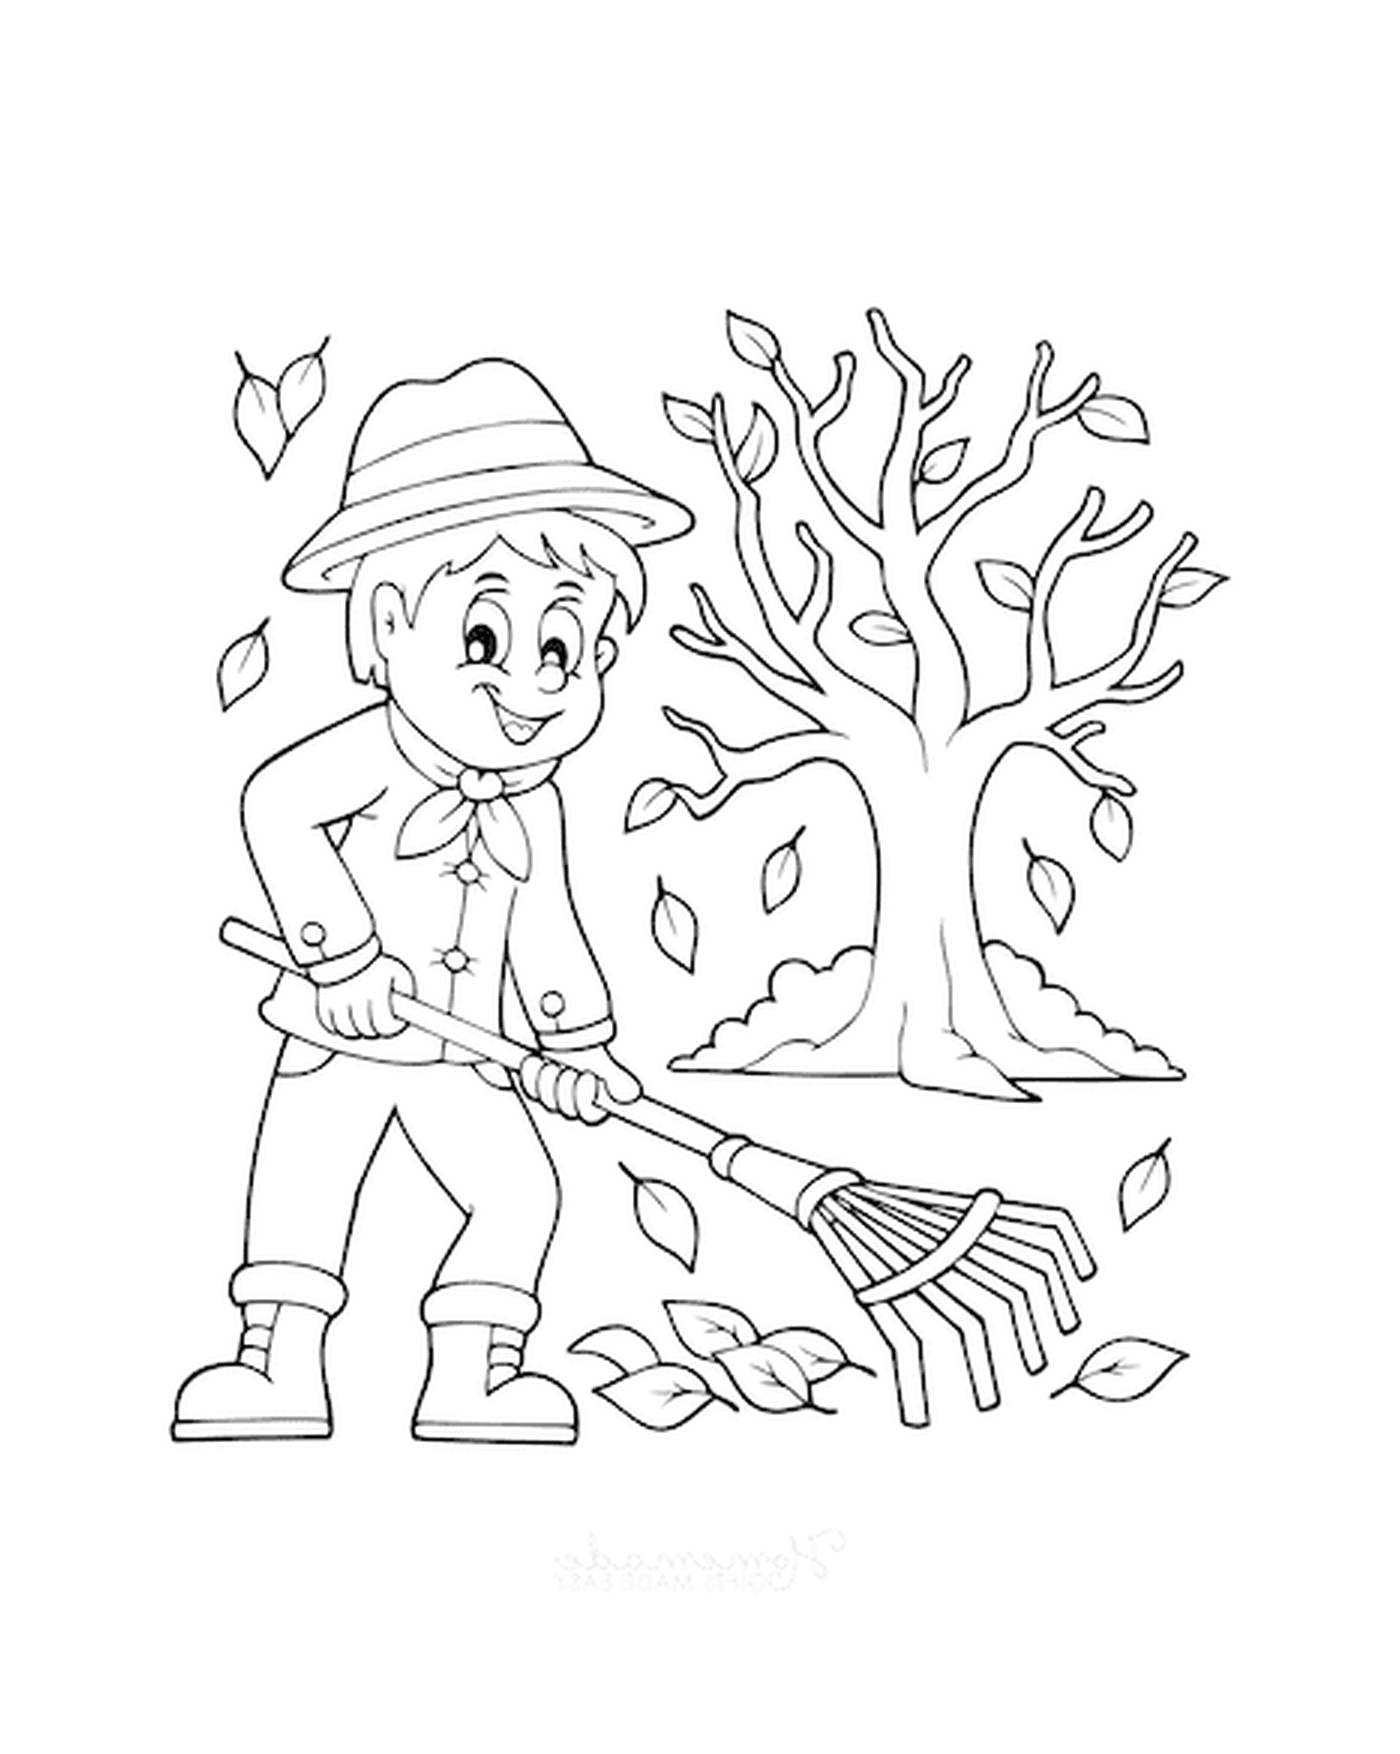   Un garçon qui ratisse les feuilles devant un arbre 